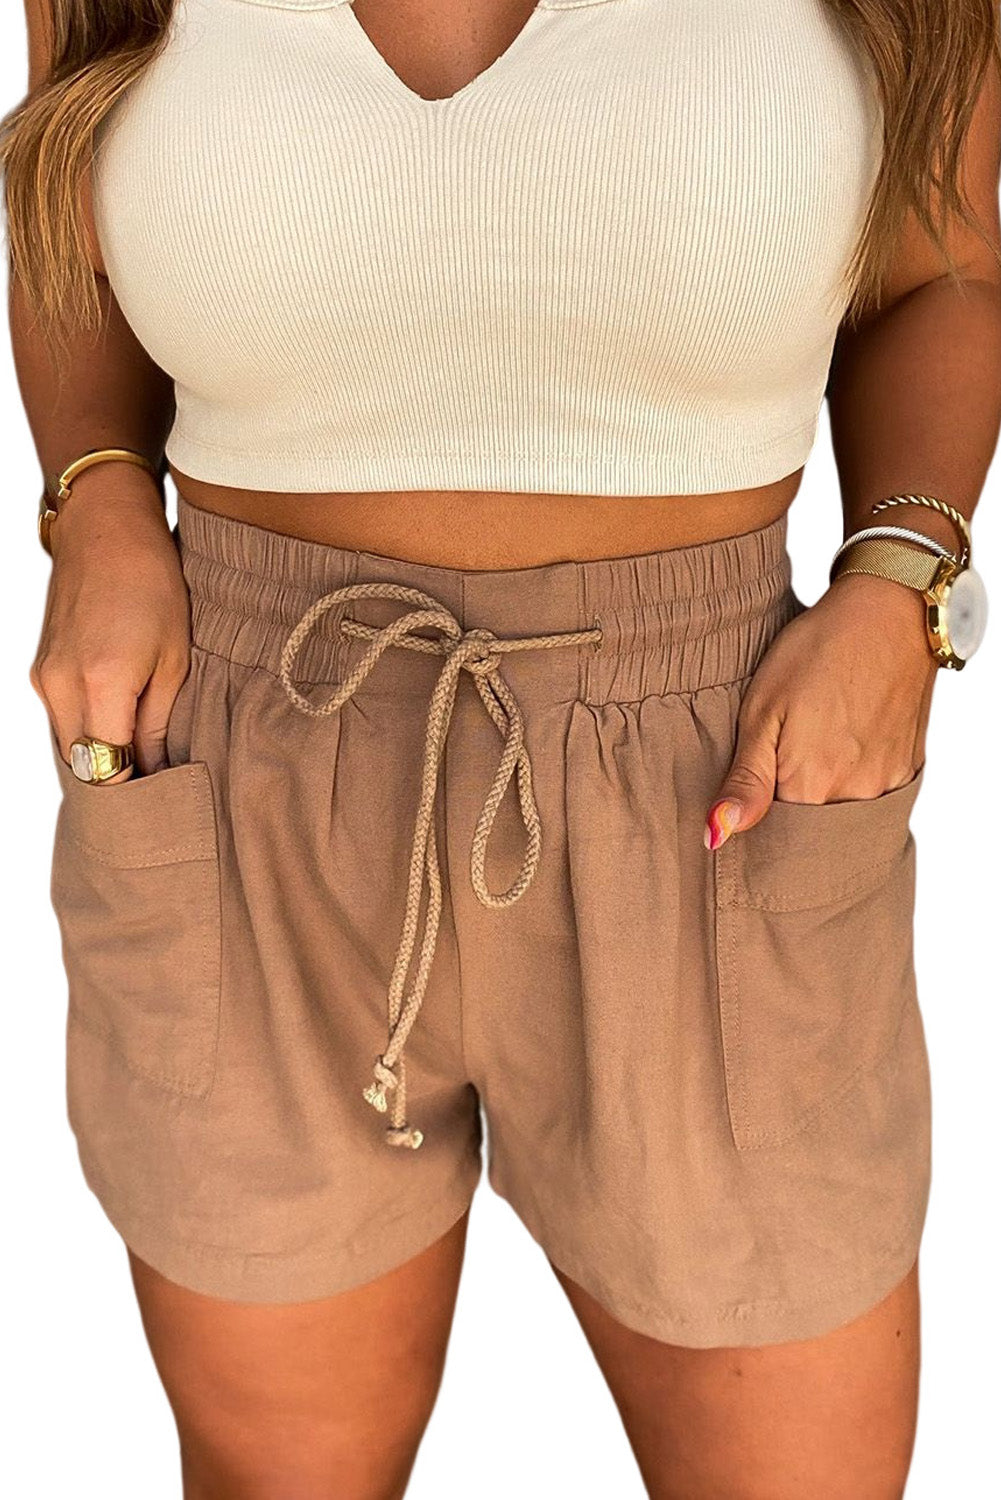 Brown Shirred Waistband Drawstring Casual Shorts With Pockets